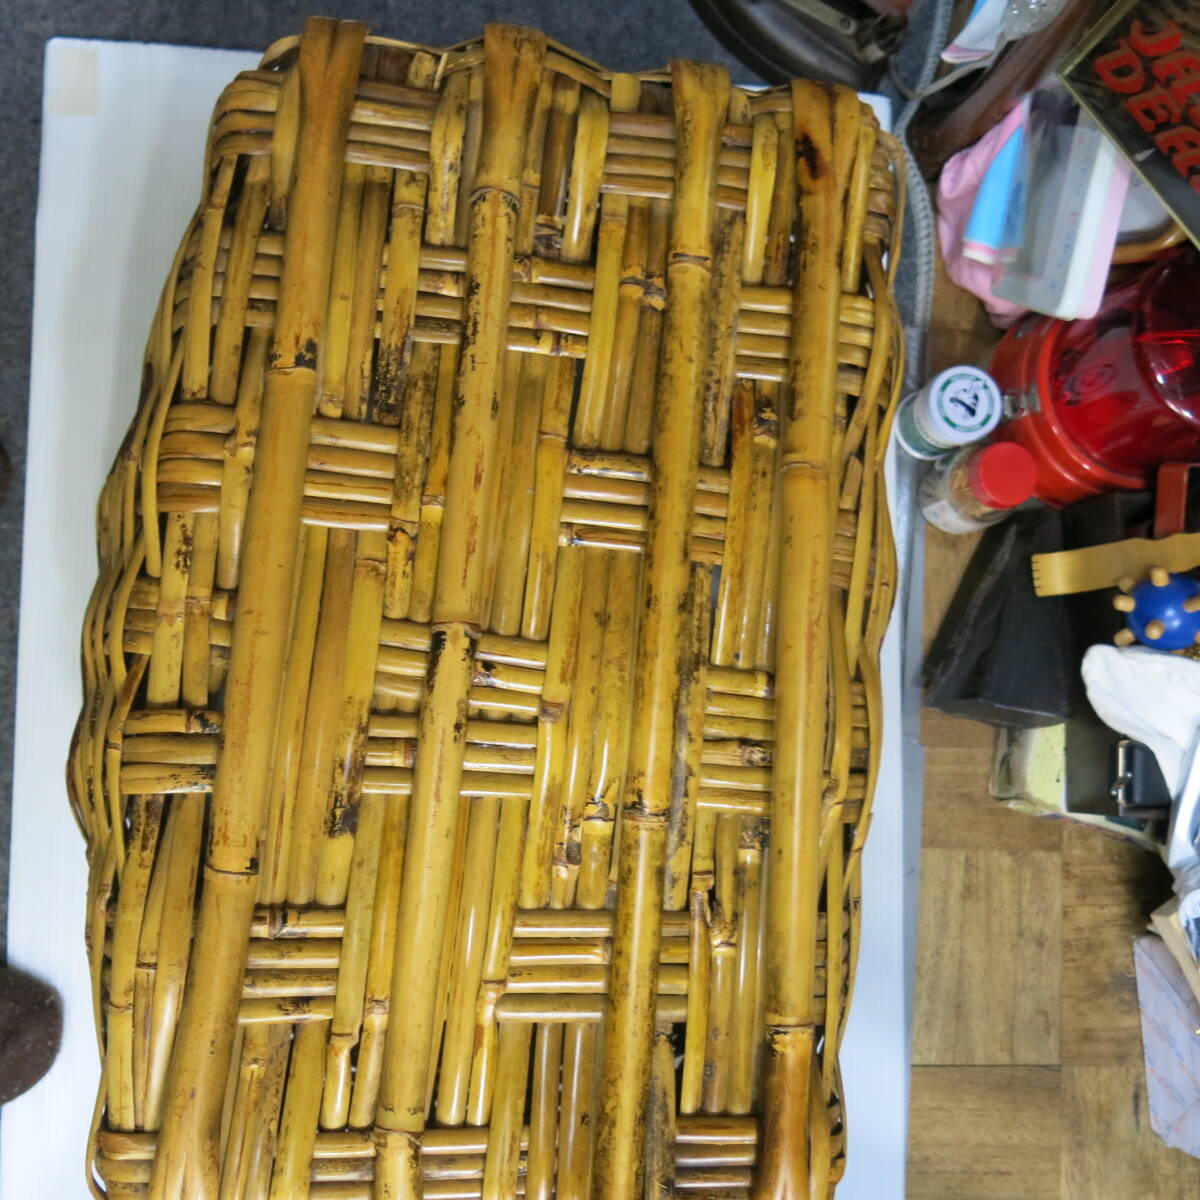 竹籠 No.2 古道具 飴色 大きい トテモ確りしている 見てて飽きない 素晴しい 縦44cm横54cm高さ37cm重さ2,600g  古道具やi (アイ)の画像2